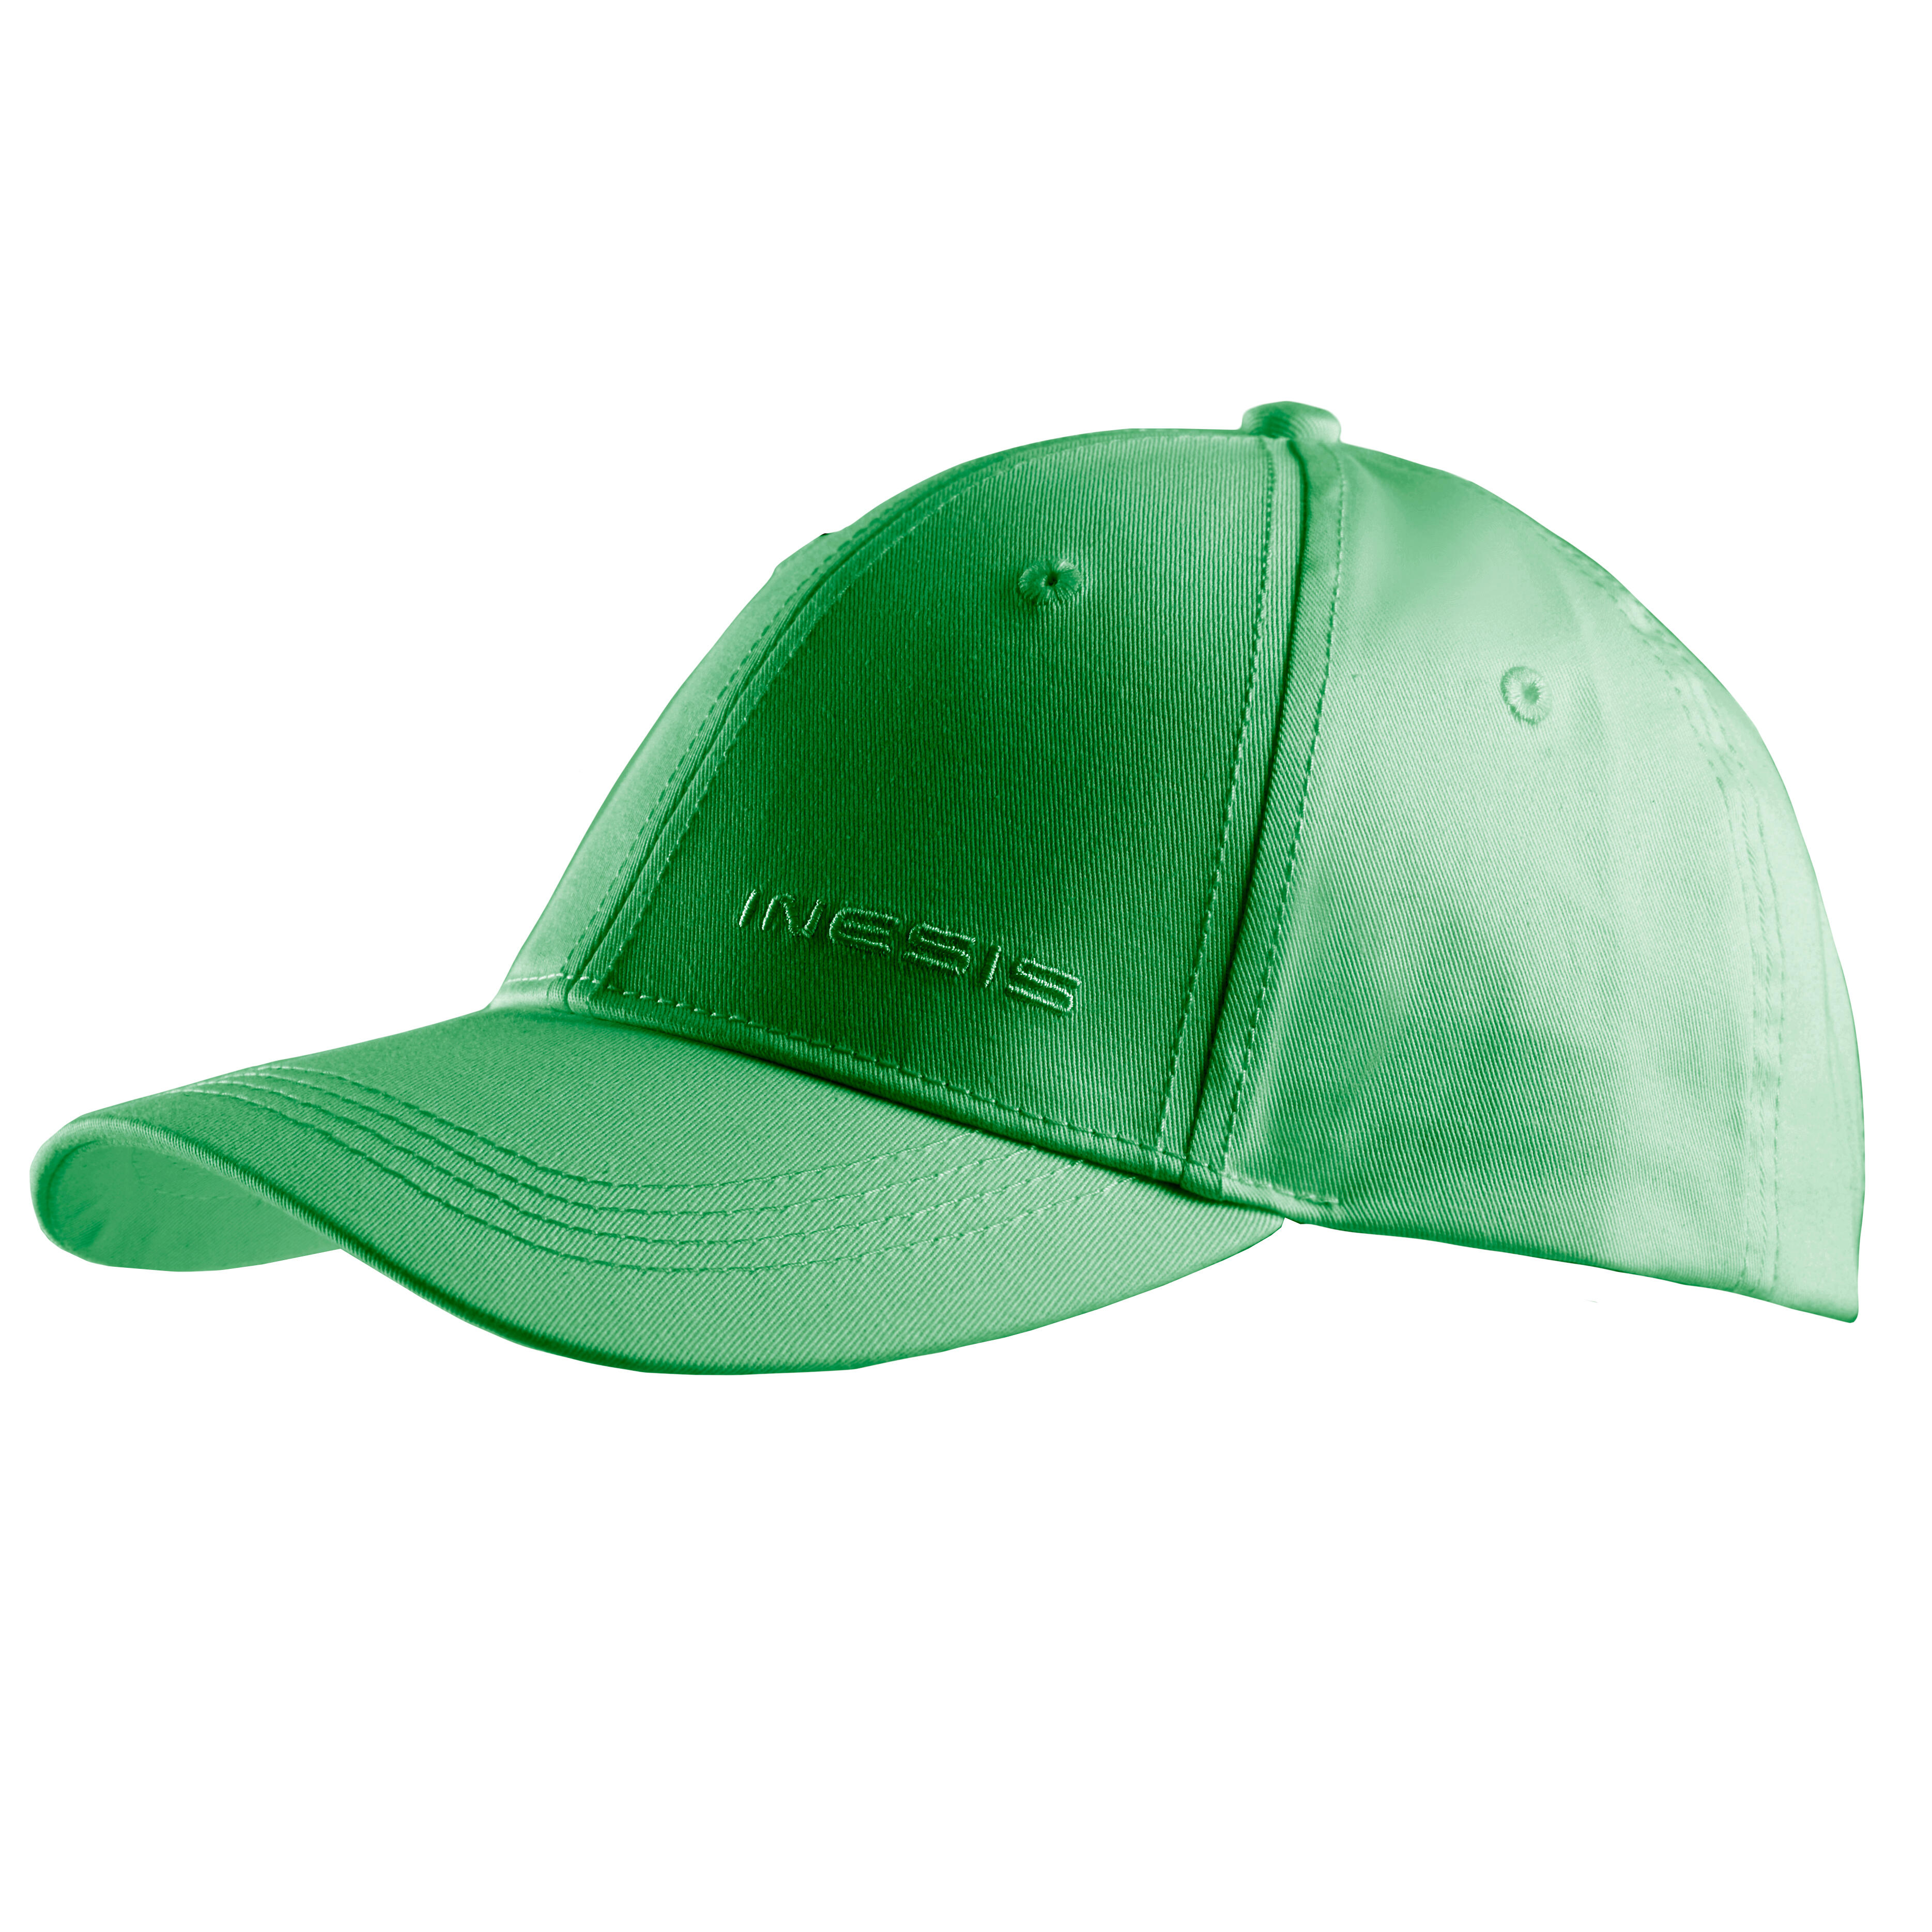 Decathlon | Cappellino golf adulto MW 500 verde |  Inesis